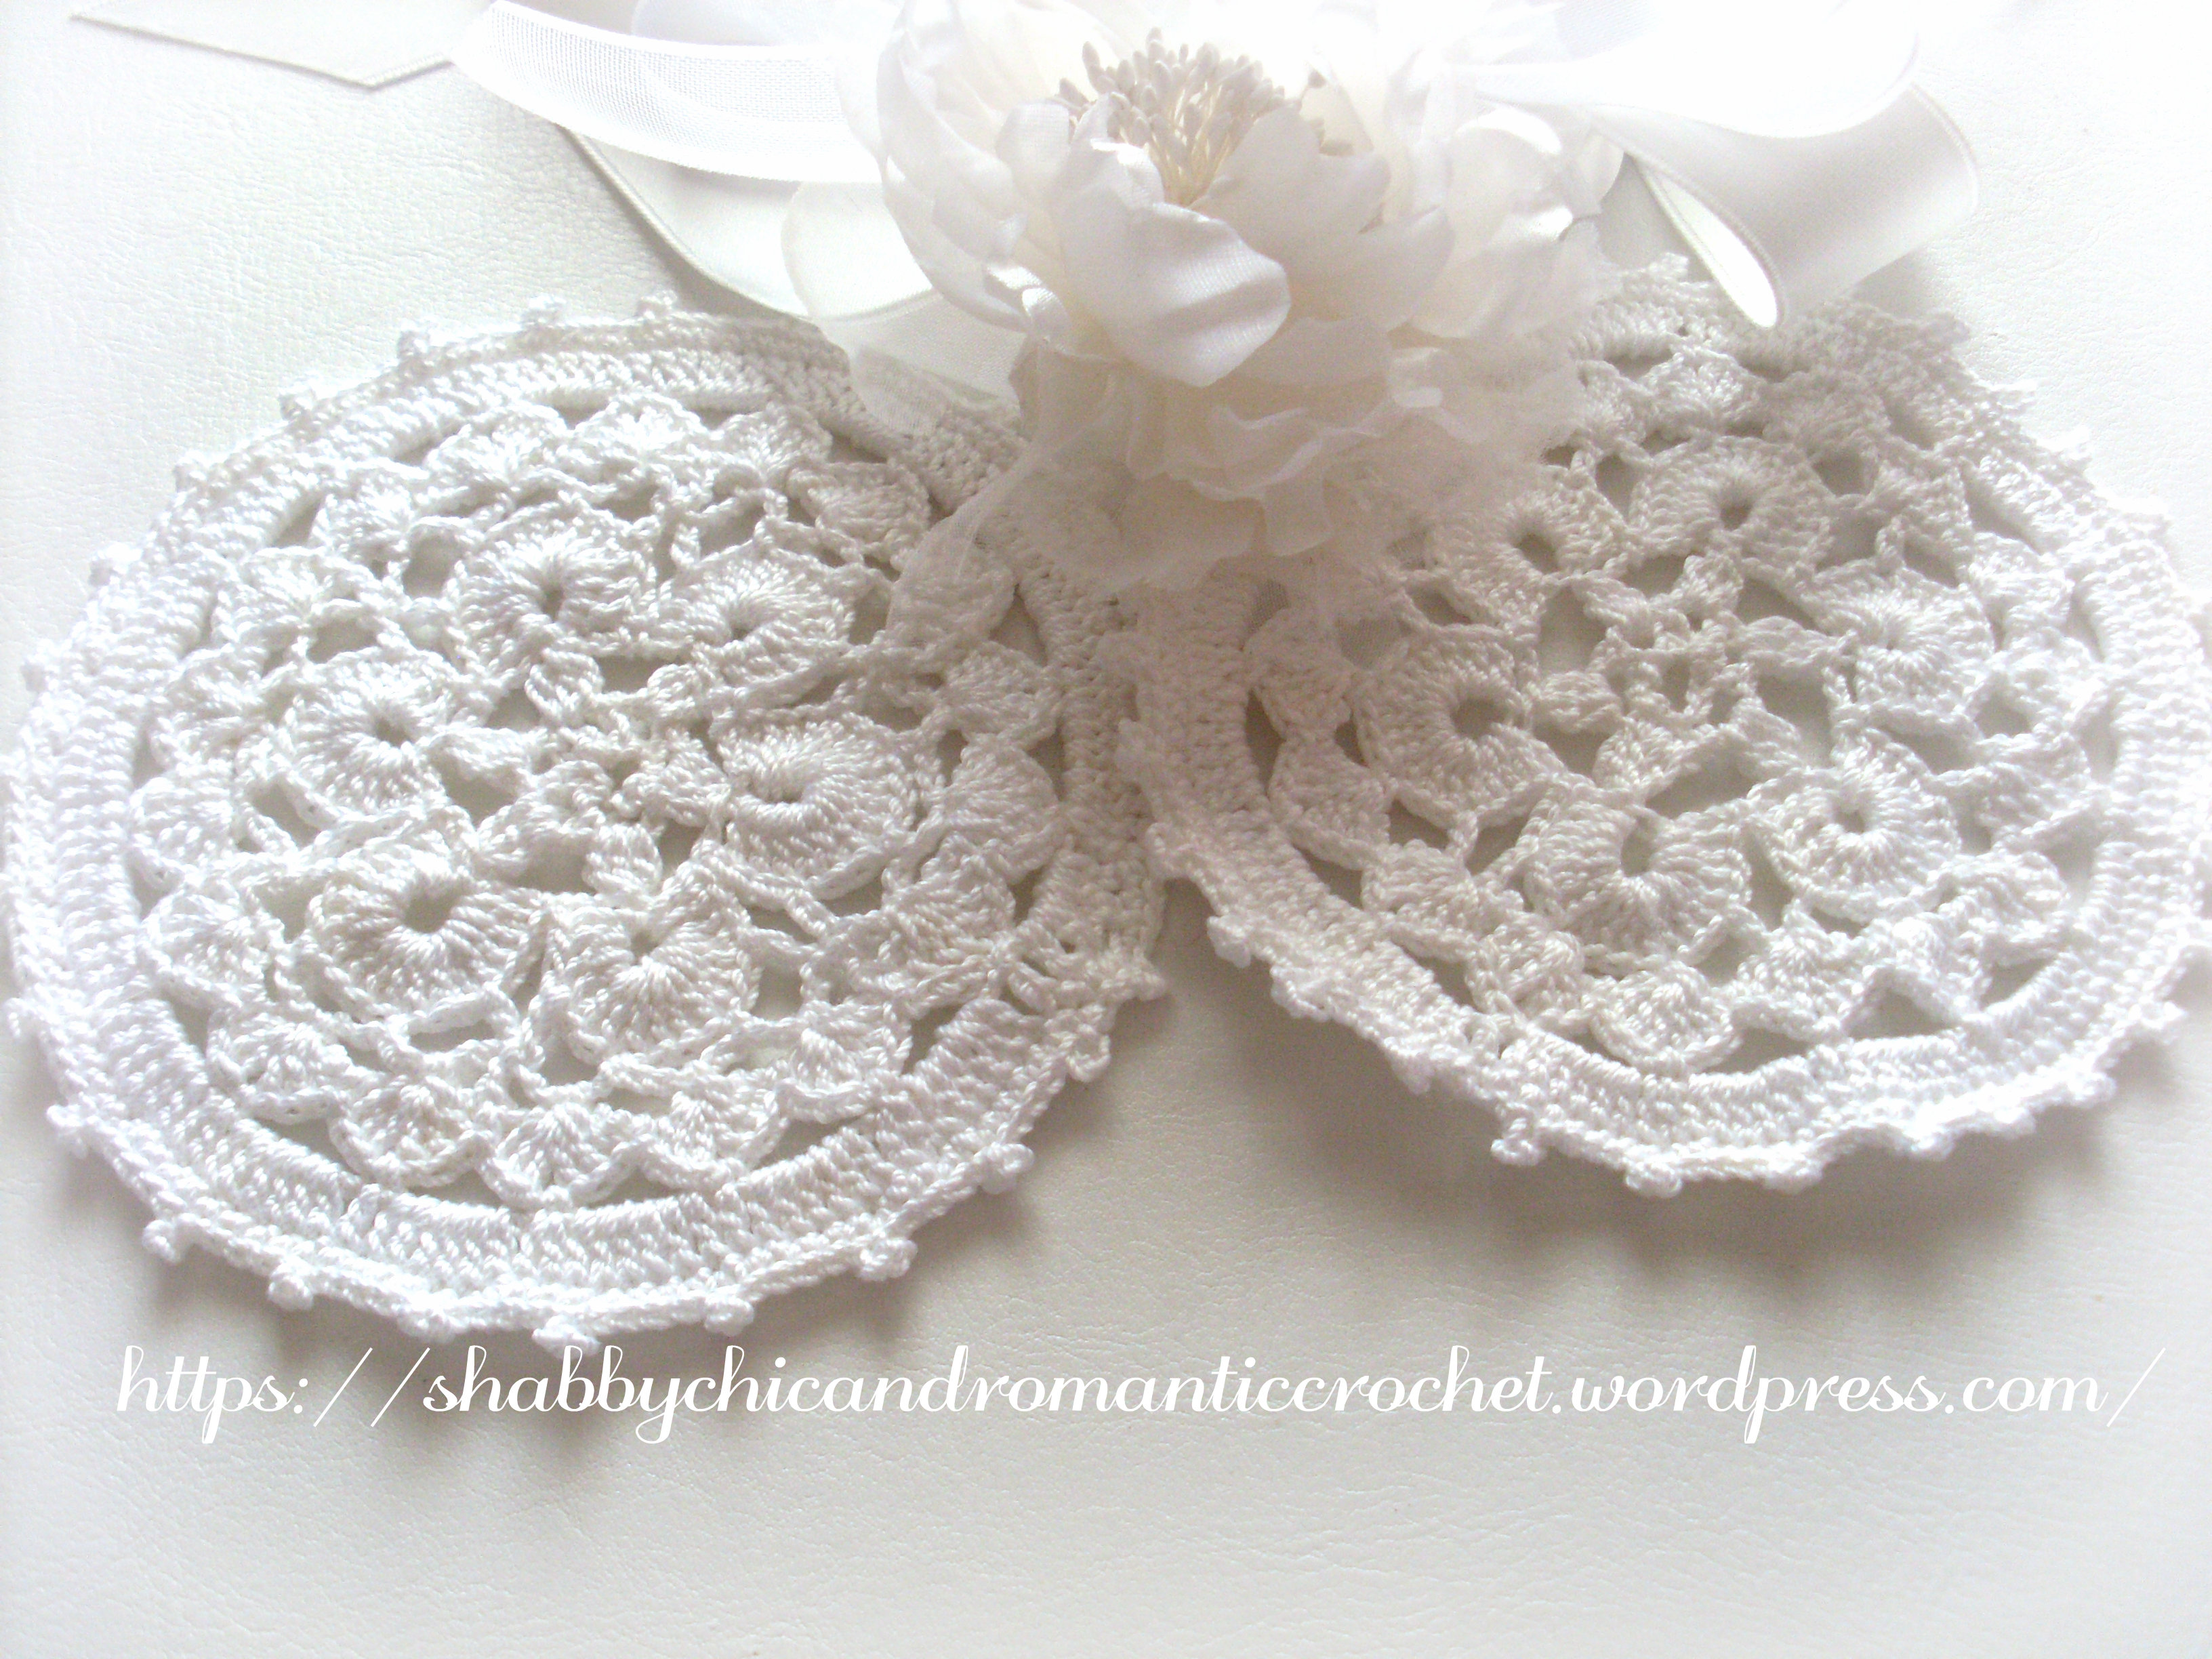 Wedding Crochet Romantic Crochet White Doilies Uncinetto Per Matrimonio Romantici Centrini All Uncinetto Bianchi Shabbychicandromanticcrochet